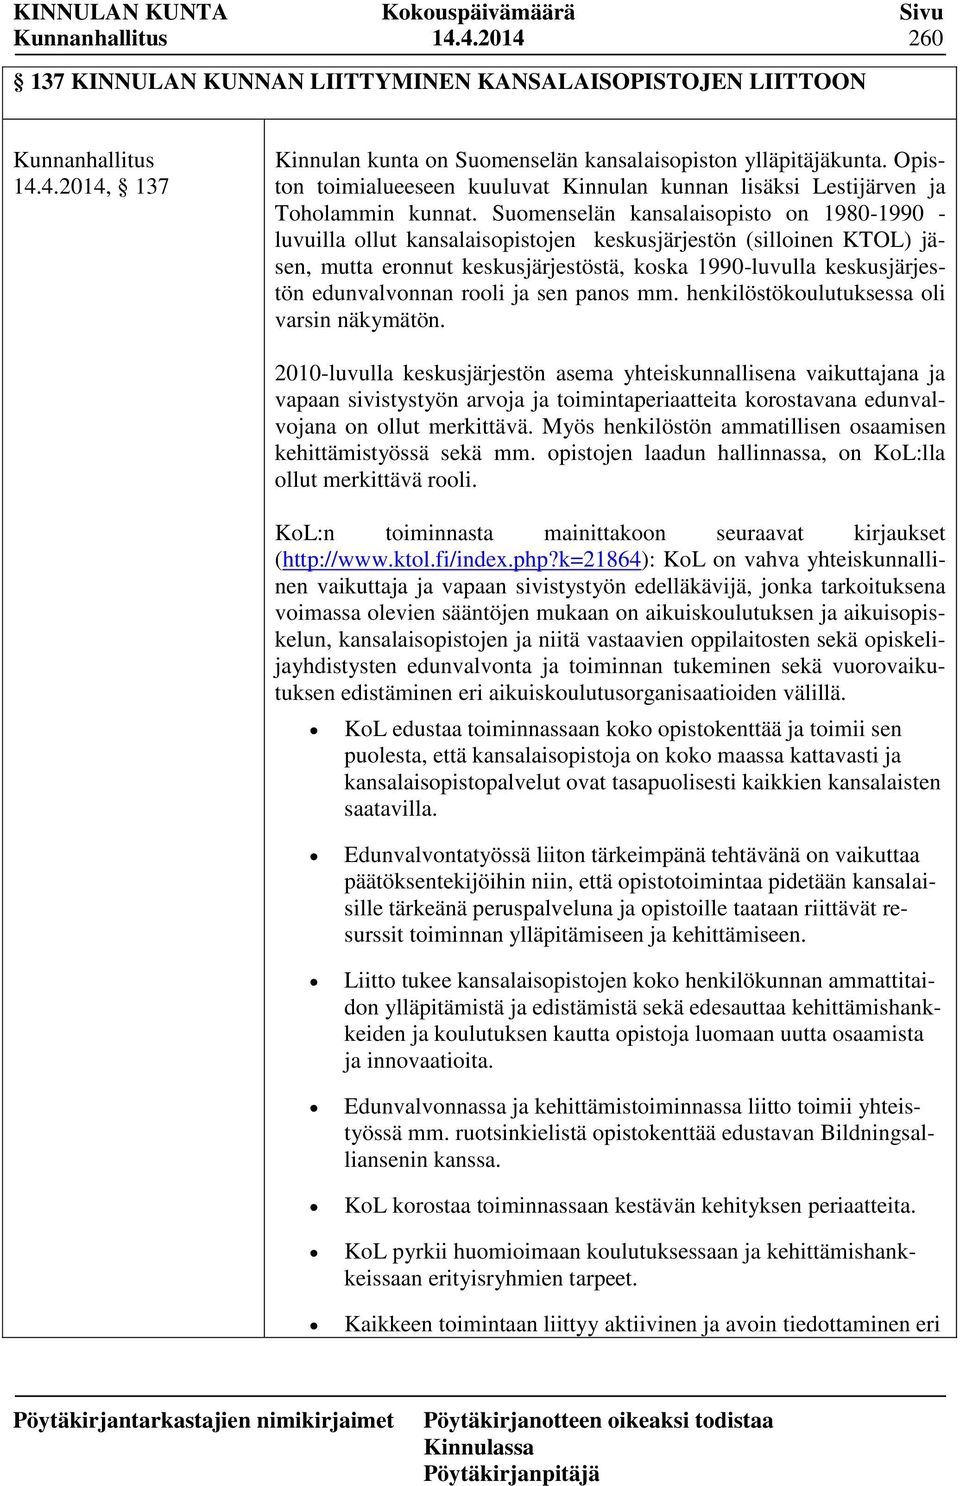 Suomenselän kansalaisopisto on 1980-1990 - luvuilla ollut kansalaisopistojen keskusjärjestön (silloinen KTOL) jäsen, mutta eronnut keskusjärjestöstä, koska 1990-luvulla keskusjärjestön edunvalvonnan